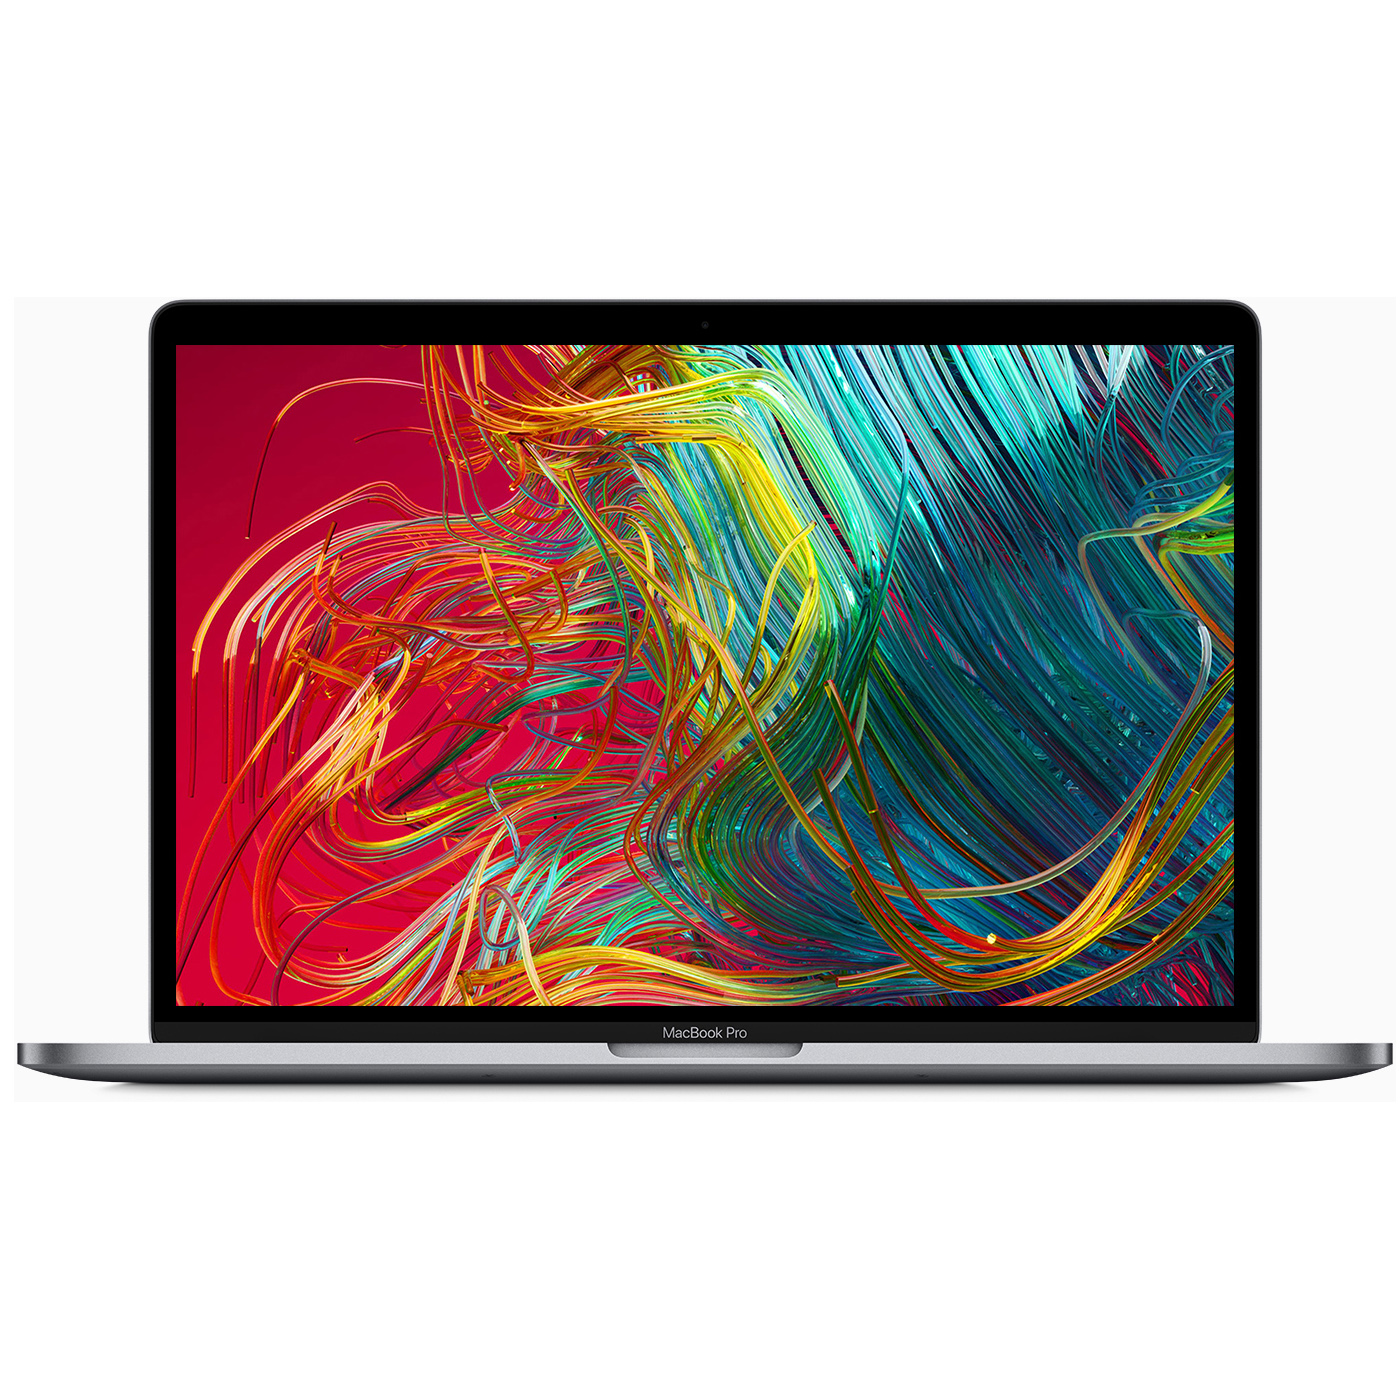 MV932- Macbook Pro 15 inch 2019/ 8 Core/ i9/ 32GB/ 512GB/ AMD PRO 560X 4GB/ New 99%